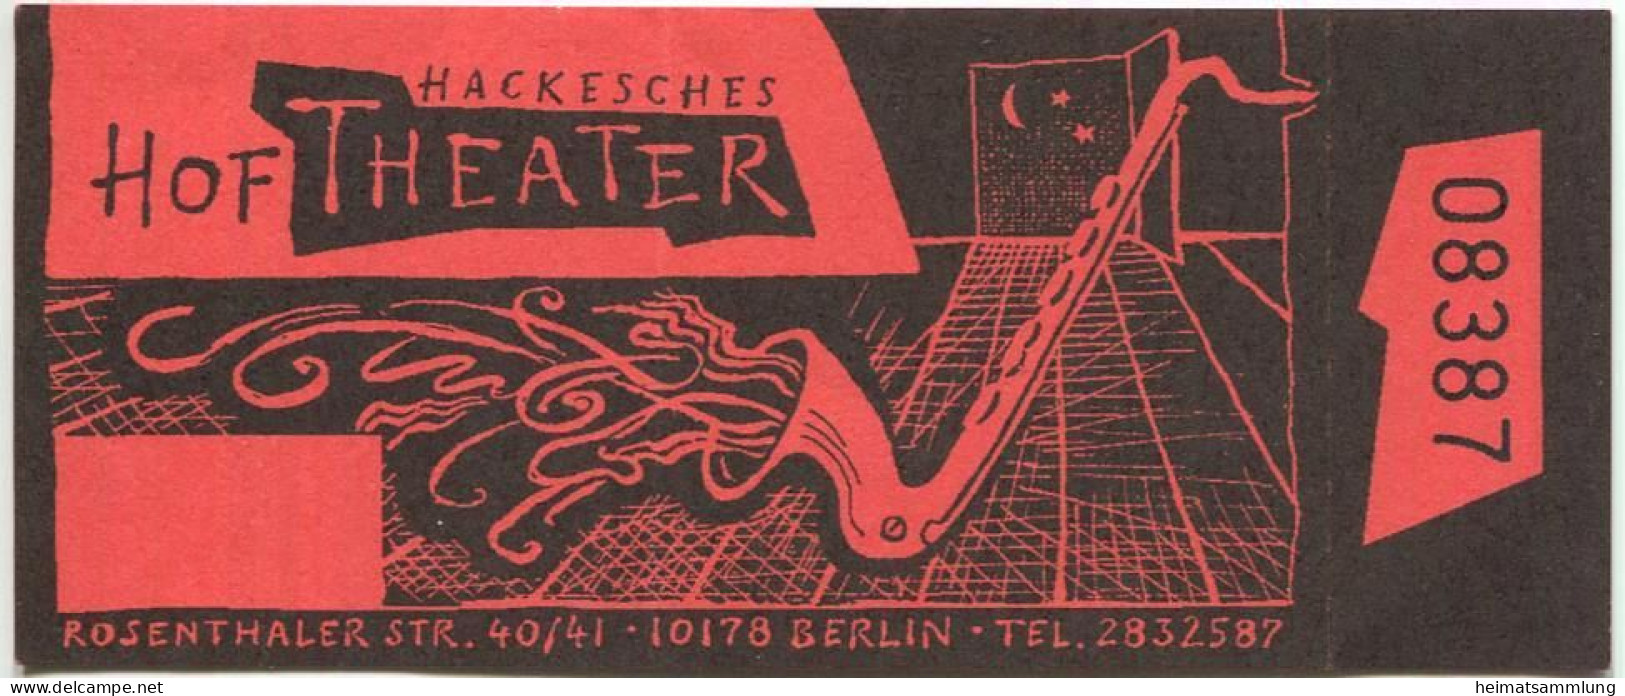 Deutschland - Berlin - Hackesches Hof Theater - Rosenthaler Str. 40/41 - Eintrittskarte - Eintrittskarten